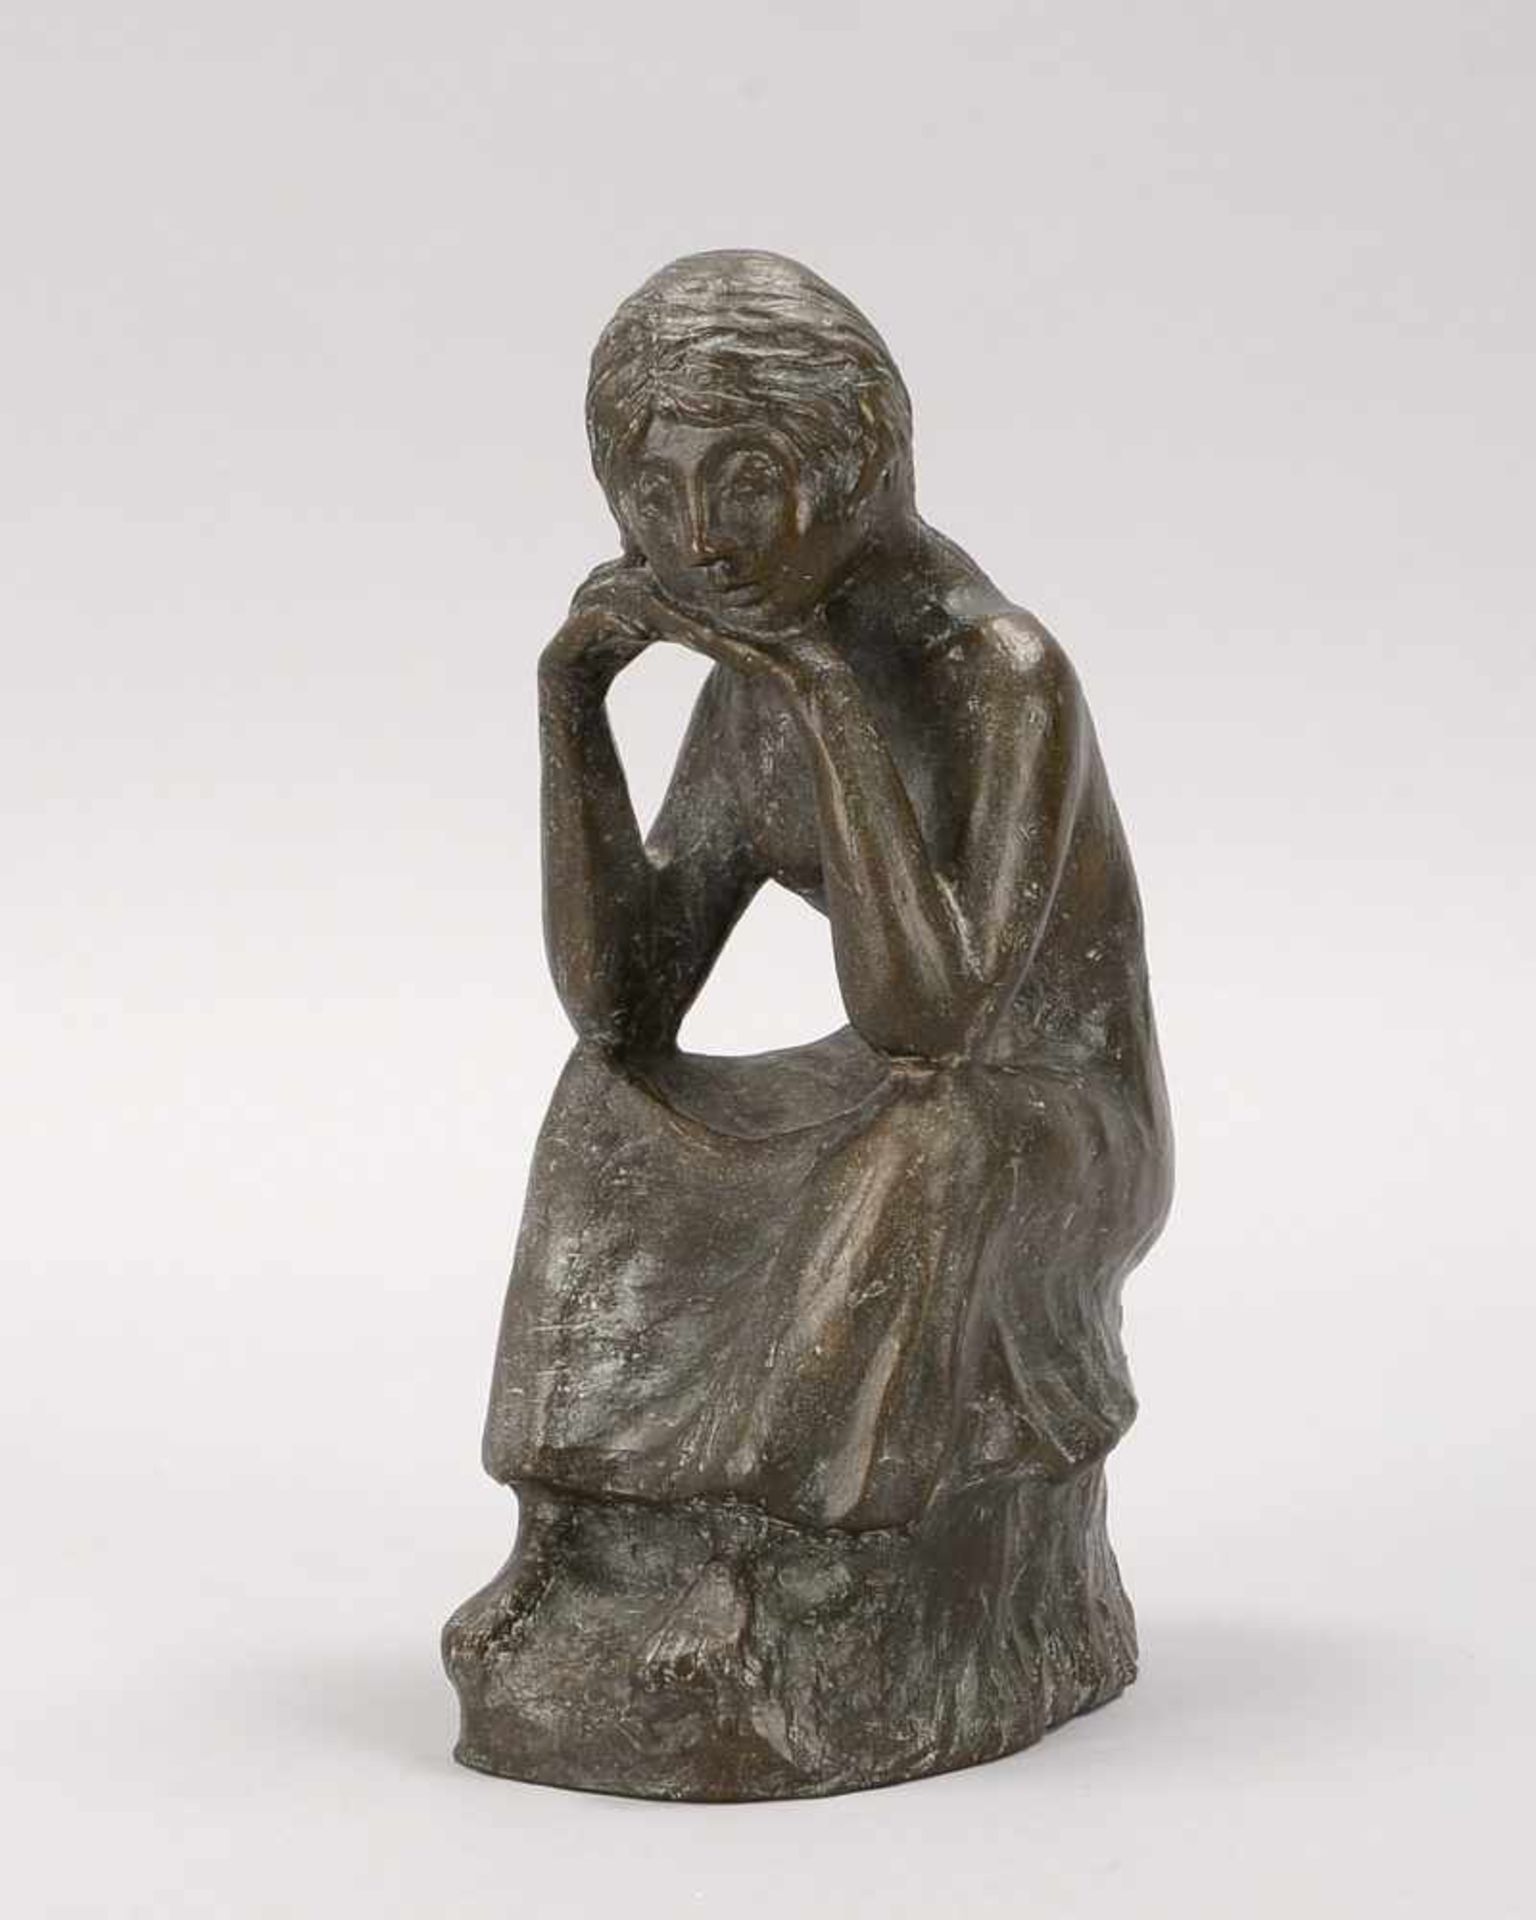 Bronzeskulptur, 'Käthe Kollwitz' (dargestellt in sitzender Pose), Guss nach Ernst Barlach,